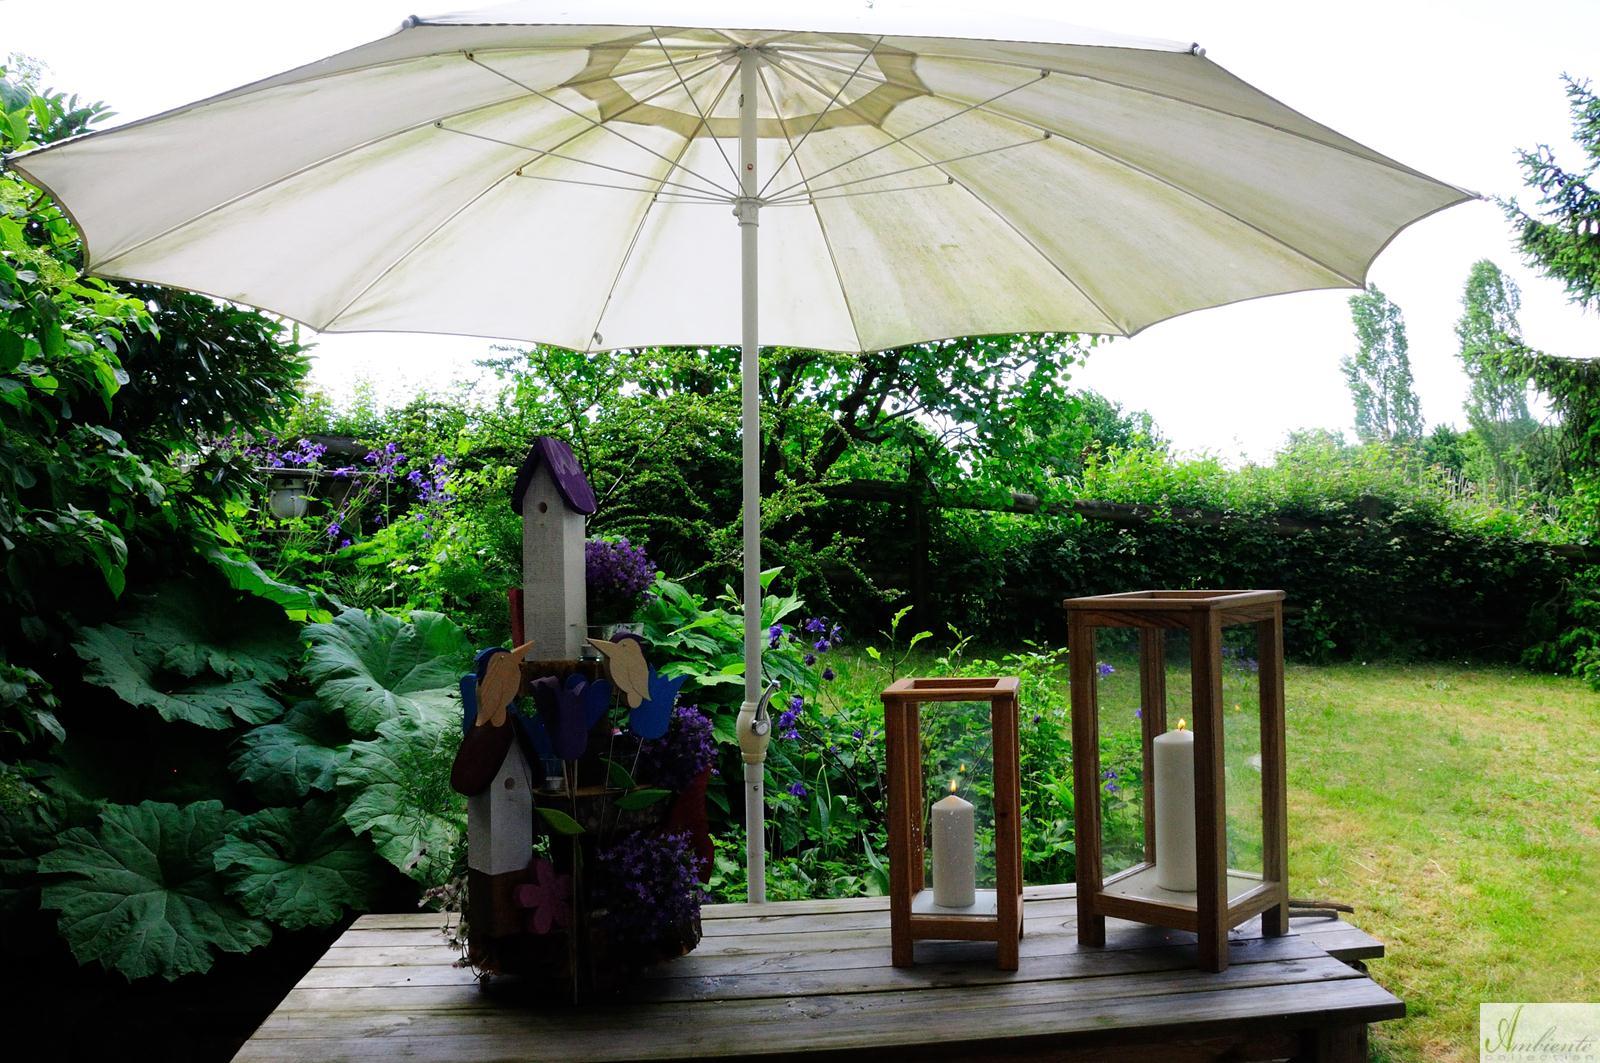 Gartentisch mit Etagere und Windlichtern #gartentisch ©www.ambiente-collection.com